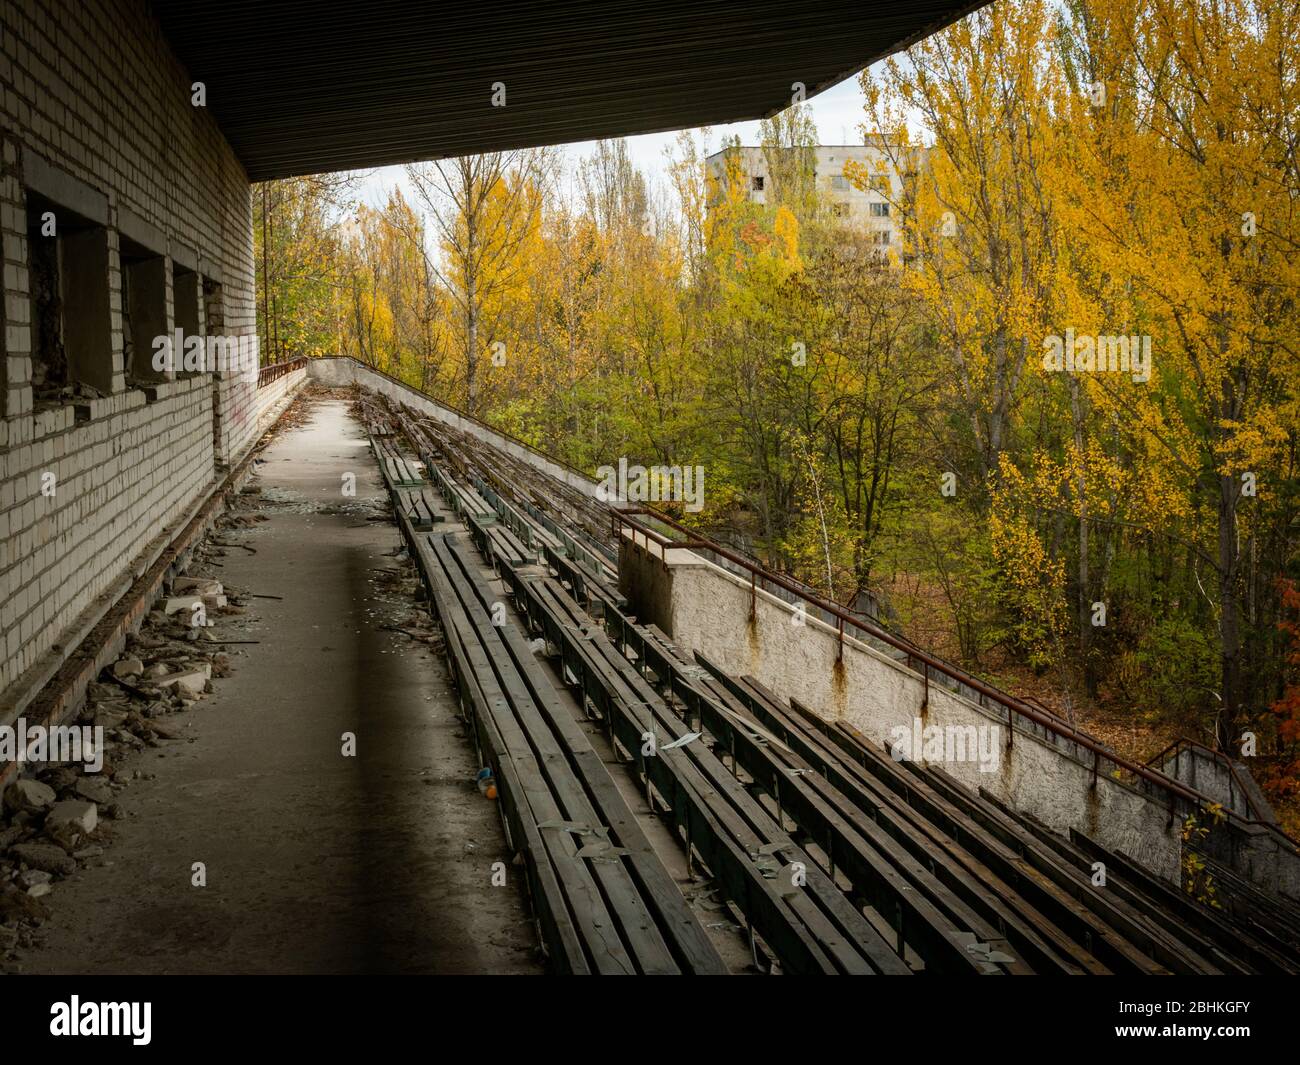 Abbandonata tribuna decadente dello stadio Avangard, presa dalla natura nella città fantasma Pripyat nella zona di esclusione di Chernobyl. Ucraina Foto Stock